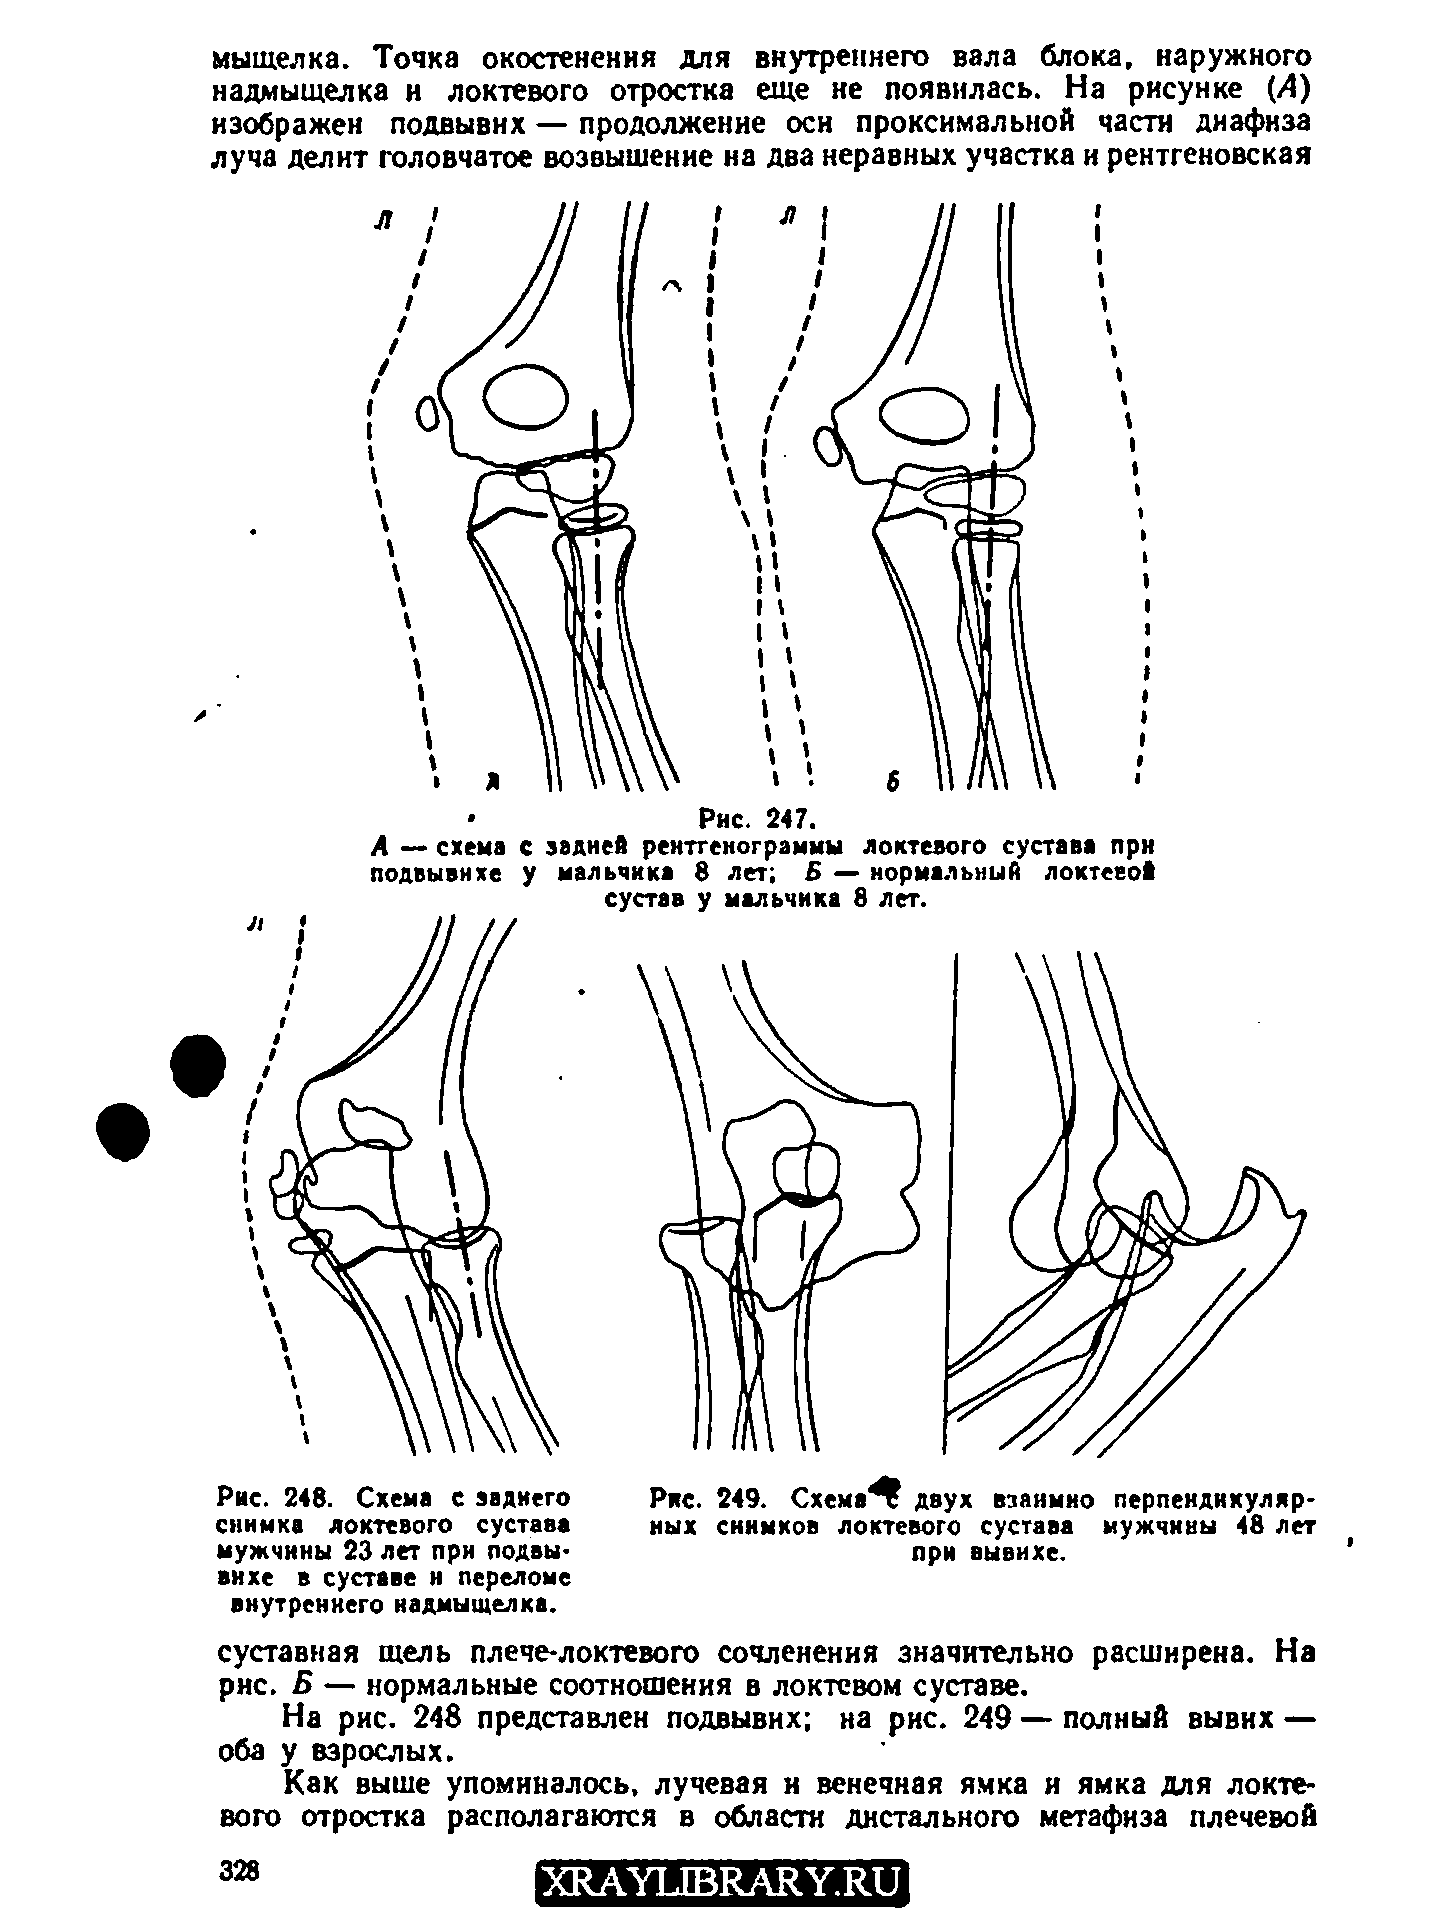 Рис. 248. Схема с заднего снимка локтевого сустава мужчины 23 лет при подвывихе в суставе н переломе внутреннего надмыщелка.